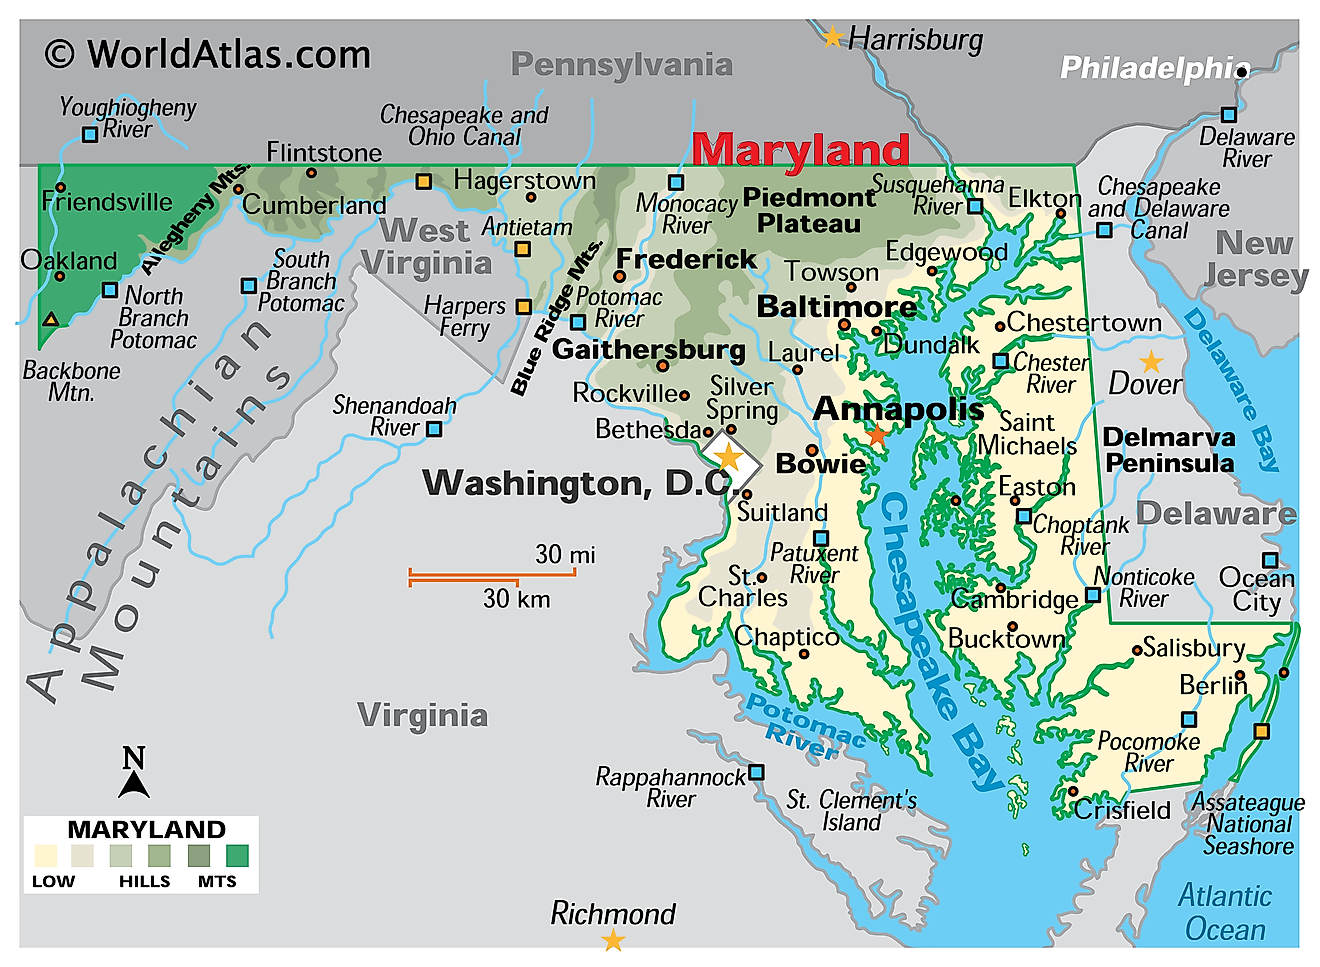 Mapa físico de Maryland. Muestra las características físicas de Maryland, incluyendo sus cadenas montañosas, los principales ríos, la península de Delmarva y la bahía de Chesapeake.